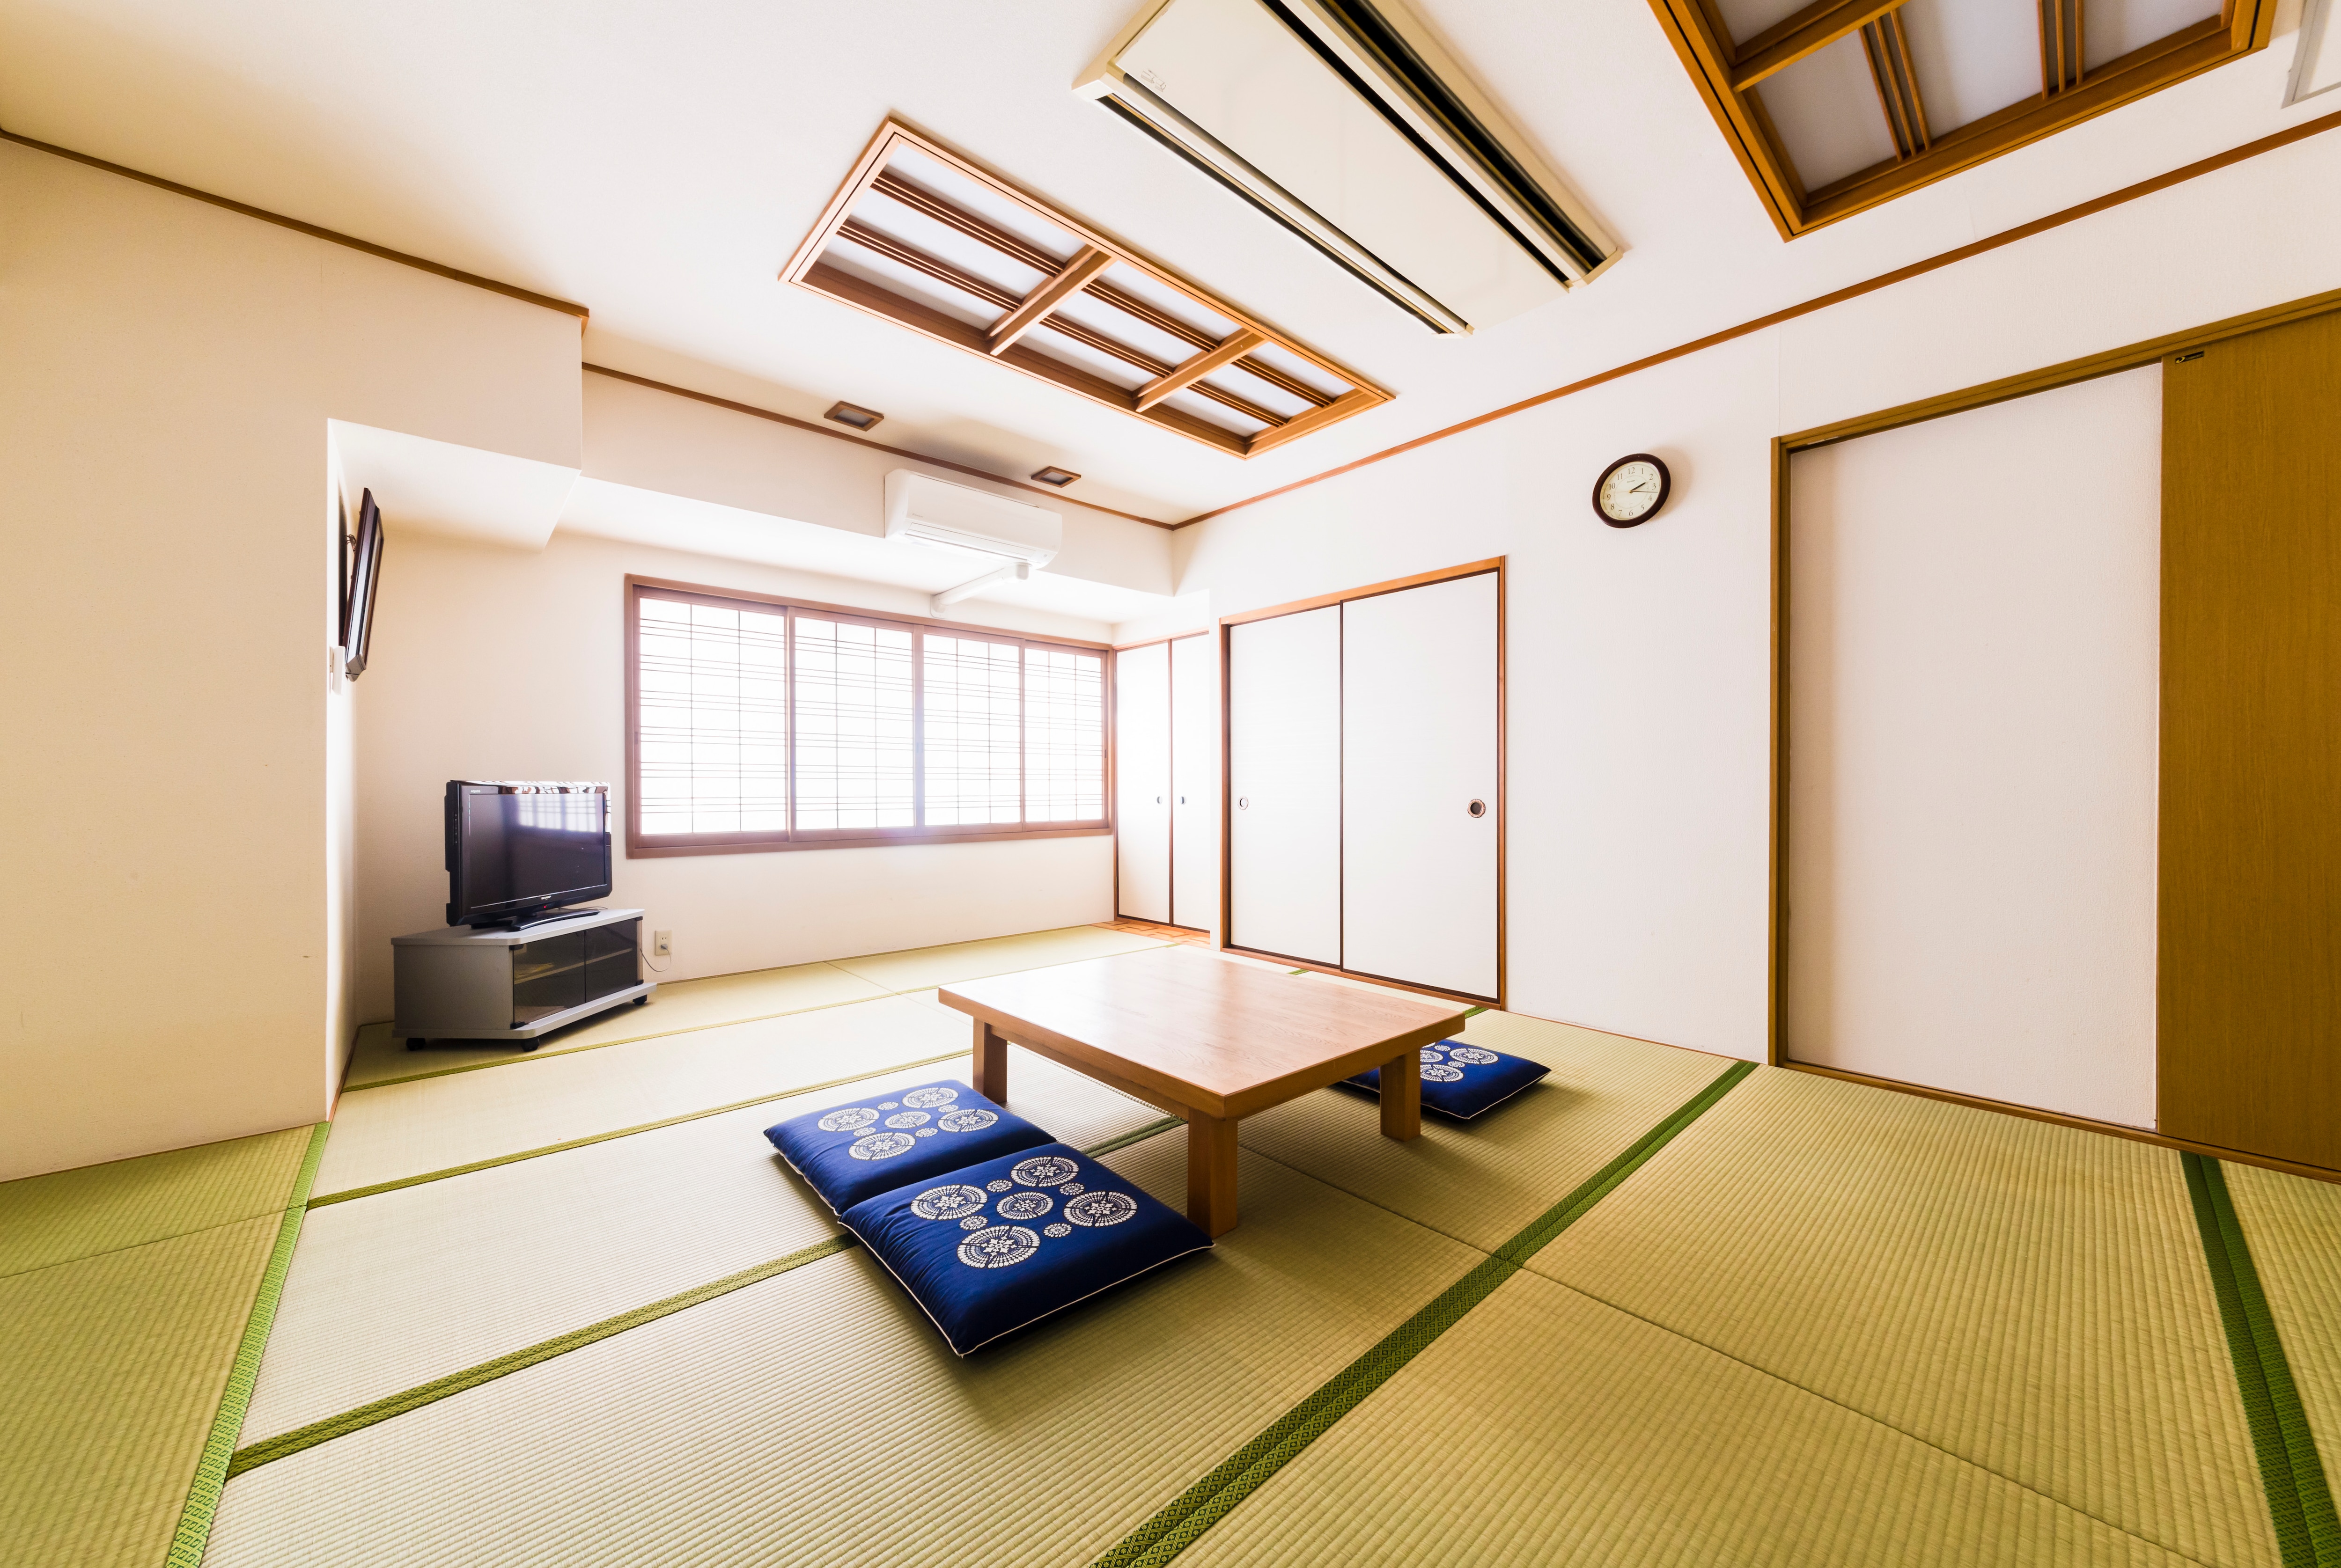 ห้องสไตล์ญี่ปุ่น 14 เสื่อทาทามิ พักได้ 2-7 คน พักผ่อนได้ในห้องที่กว้างขวางและกว้างขวาง